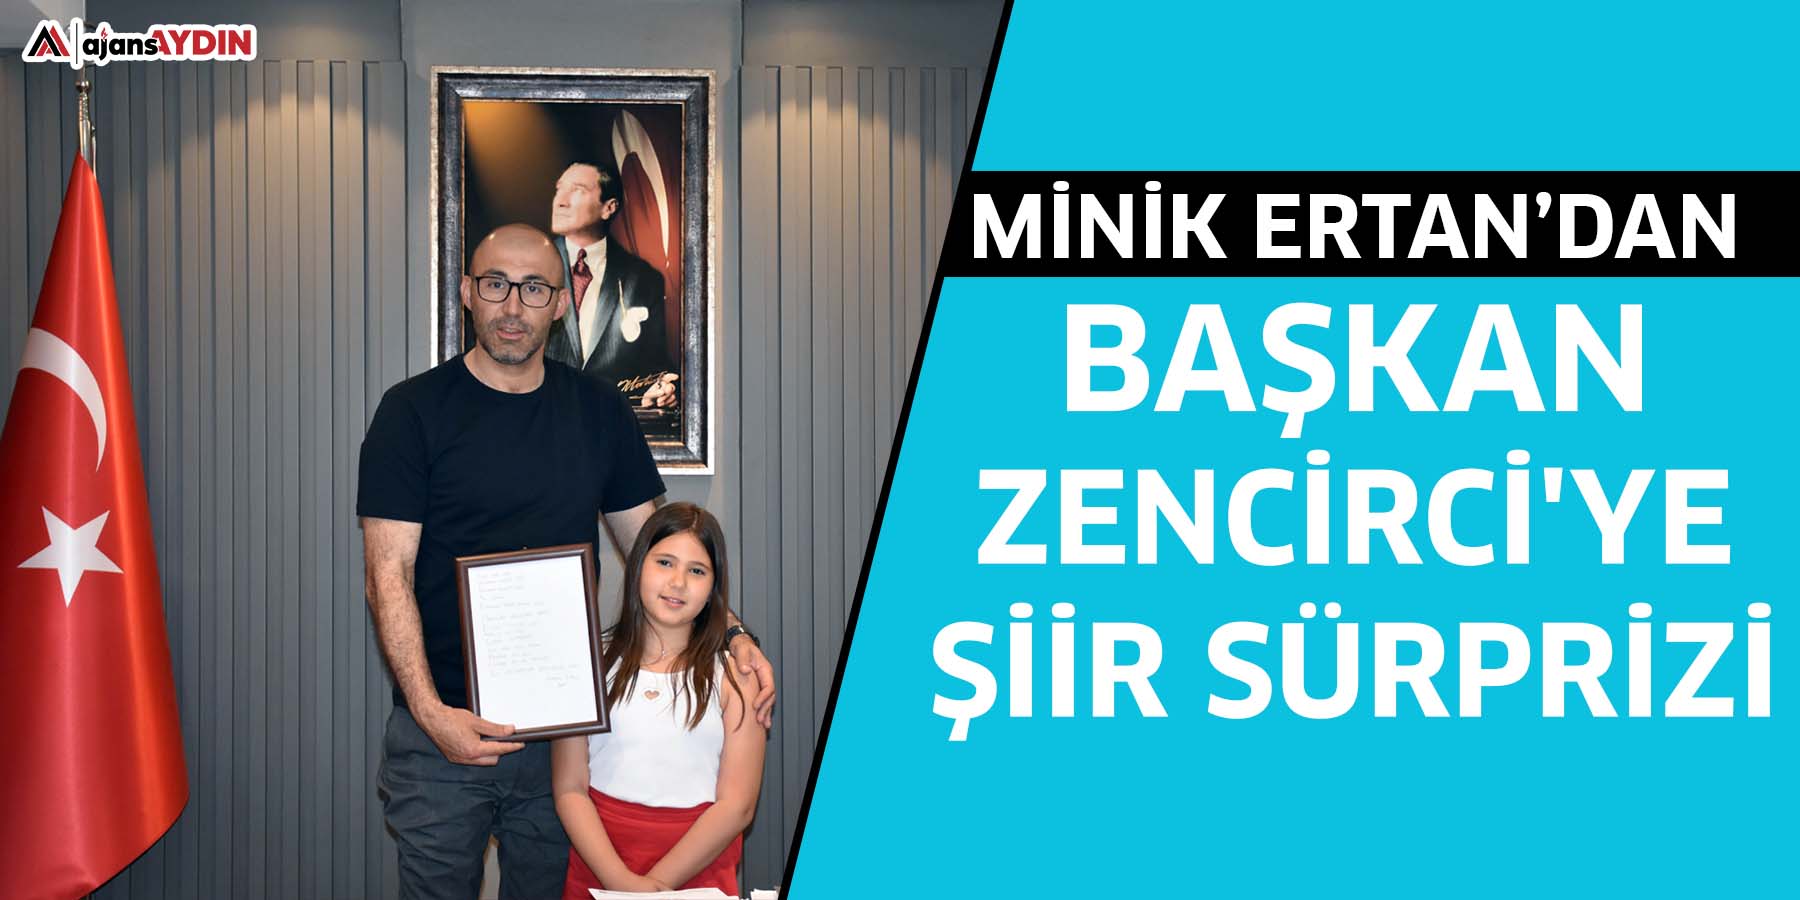 Minik Ertan’dan Başkan Zencirci'ye şiir sürprizi